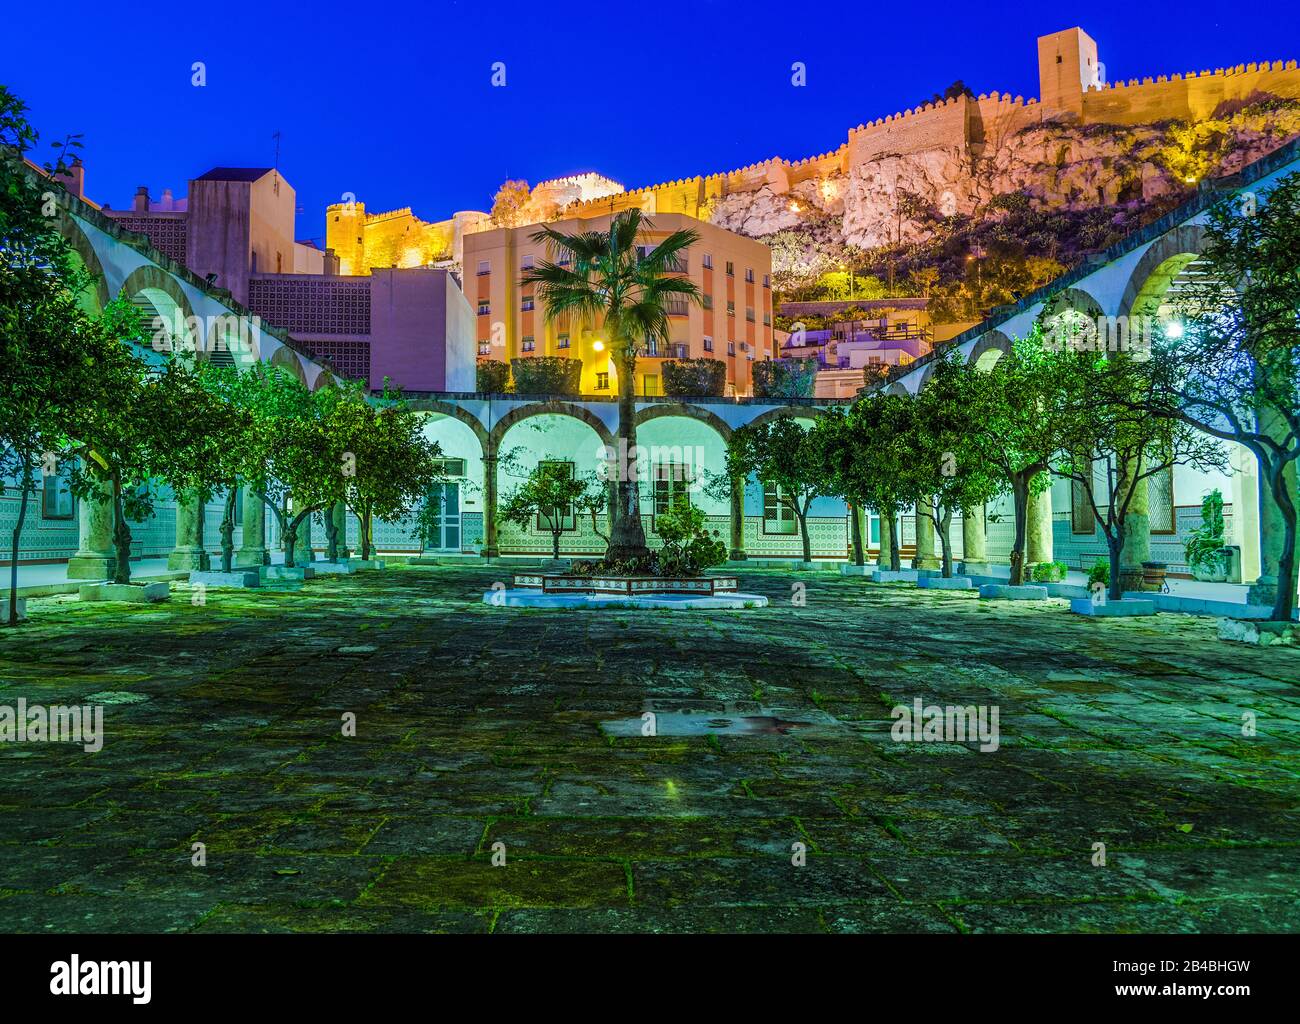 Patio de Los Naranjos nell'ora blu, con l'Alcazaba, illuminato sullo sfondo, città di Almeria, Andalusia, Spagna Foto Stock